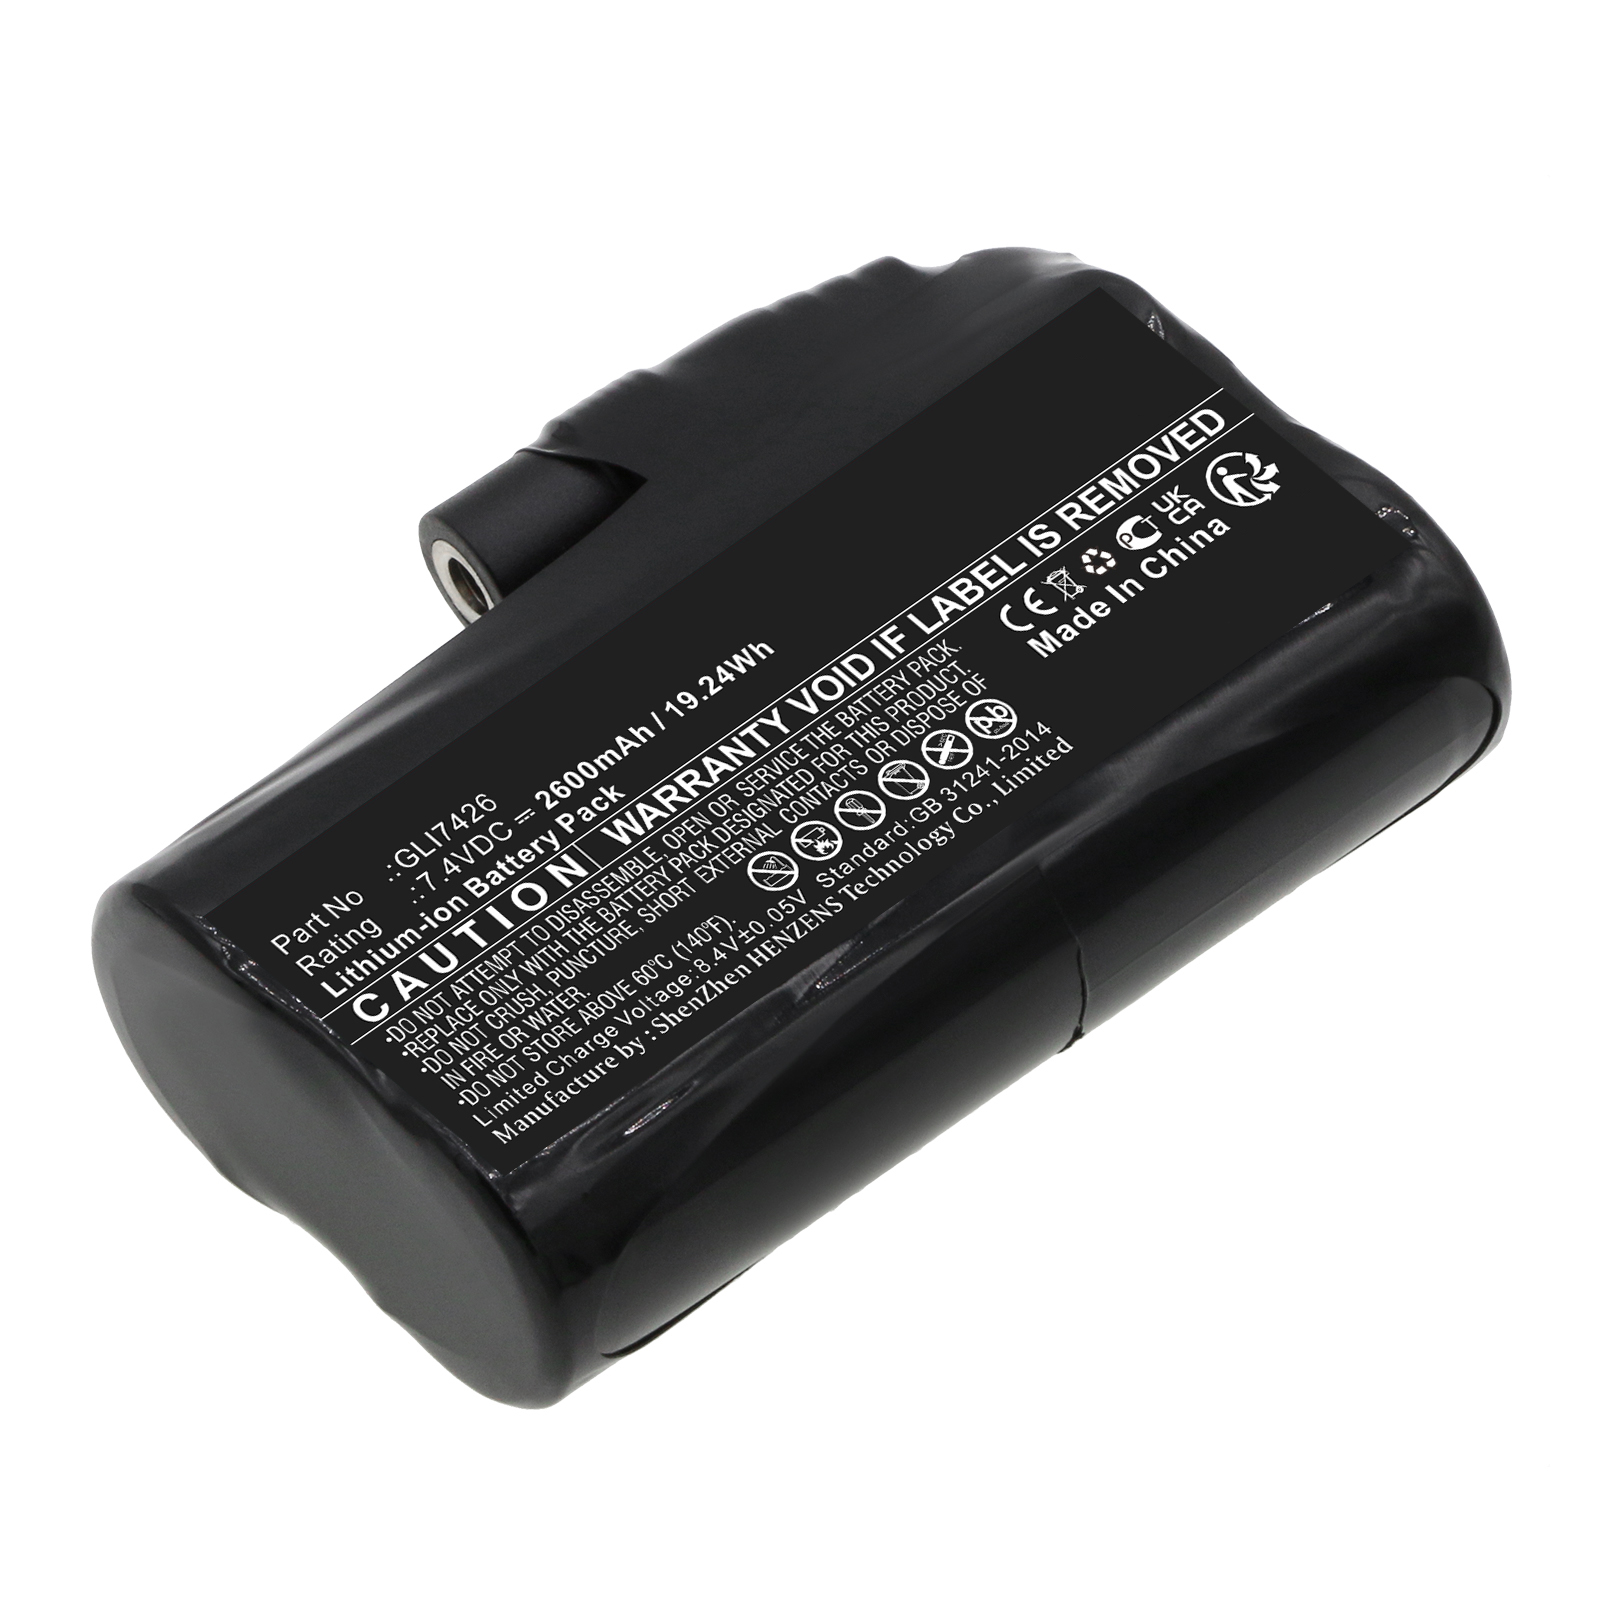 Synergy Digital Mobile Warming Battery, Compatible with Glovii GLI7426 Mobile Warming Battery (Li-ion, 7.4V, 2600mAh)